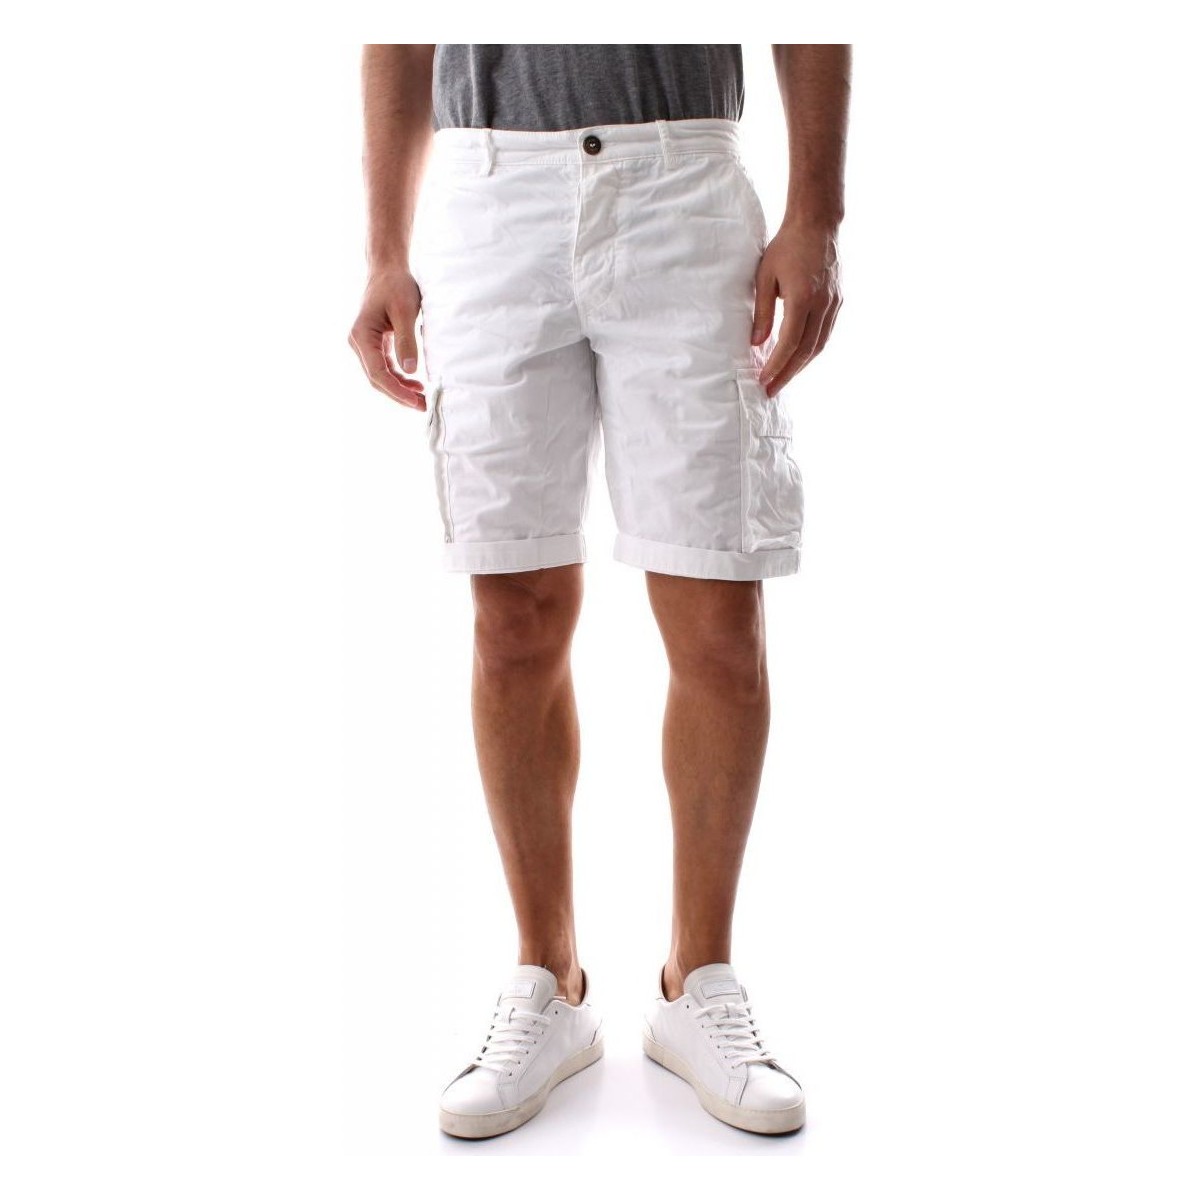 Kleidung Herren Shorts / Bermudas 40weft NICK 6013/6874-40W441 WHITE Weiss